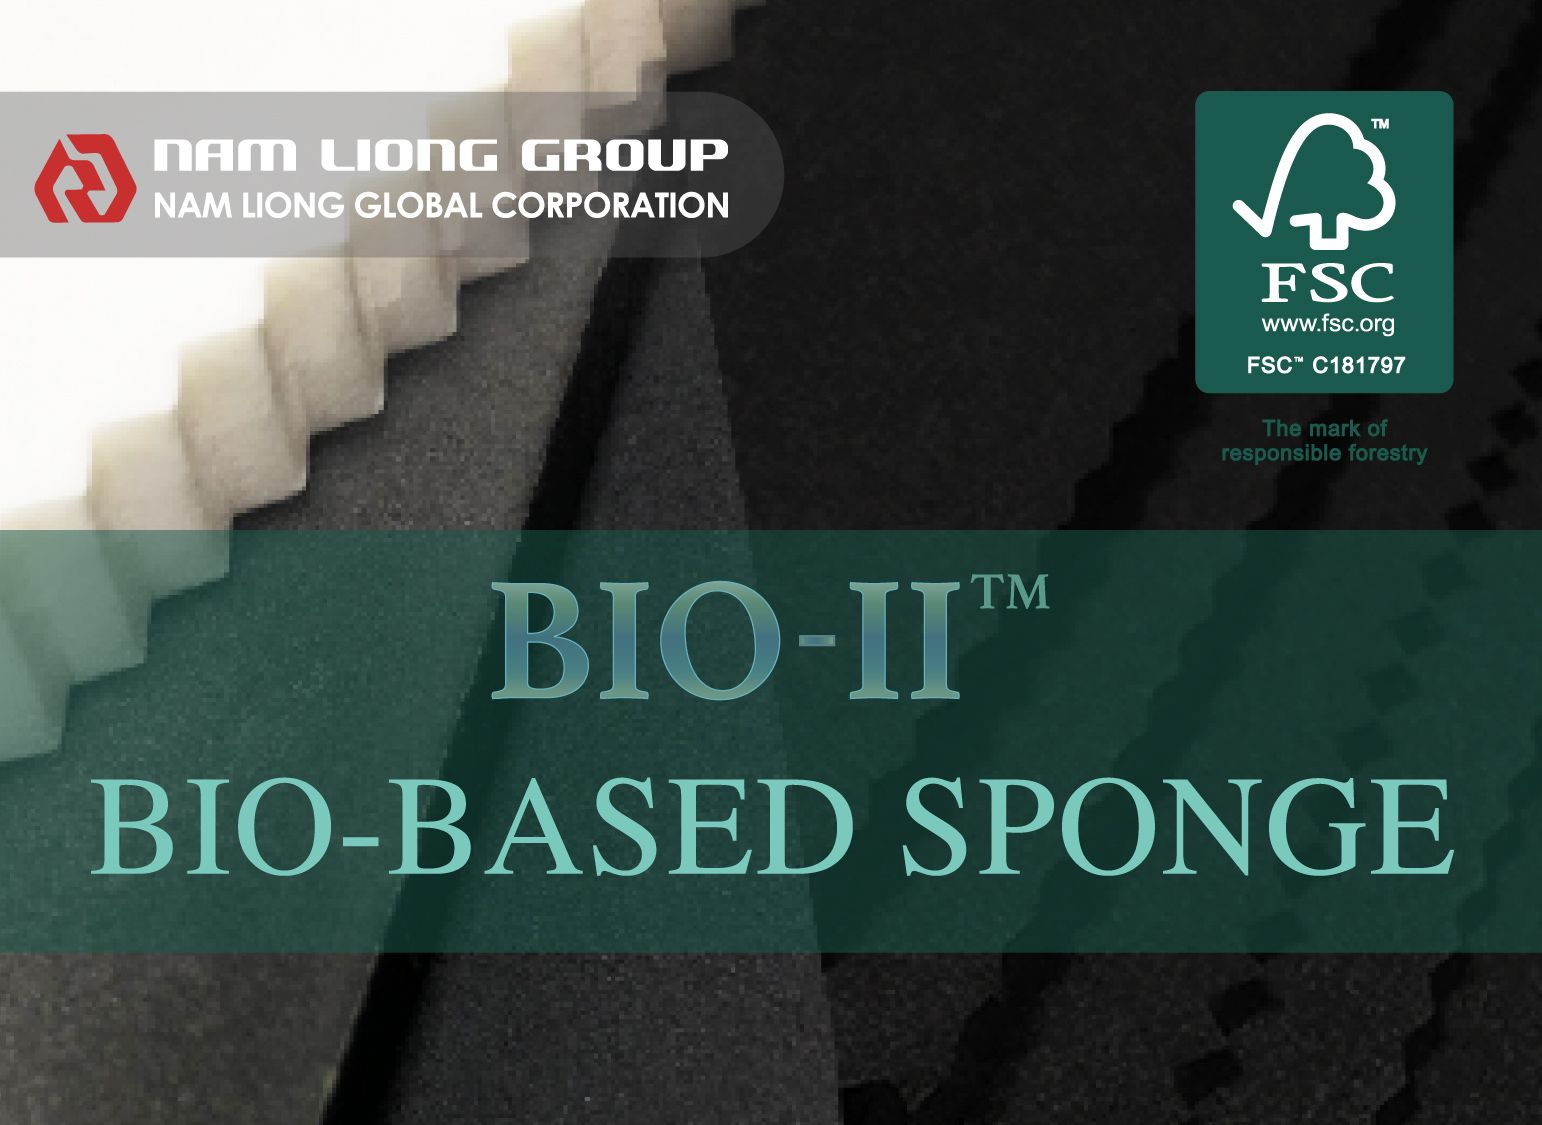 Nam Liong possui uma série à base de bioplástico tanto para espuma de borracha quanto para espuma termoplástica.